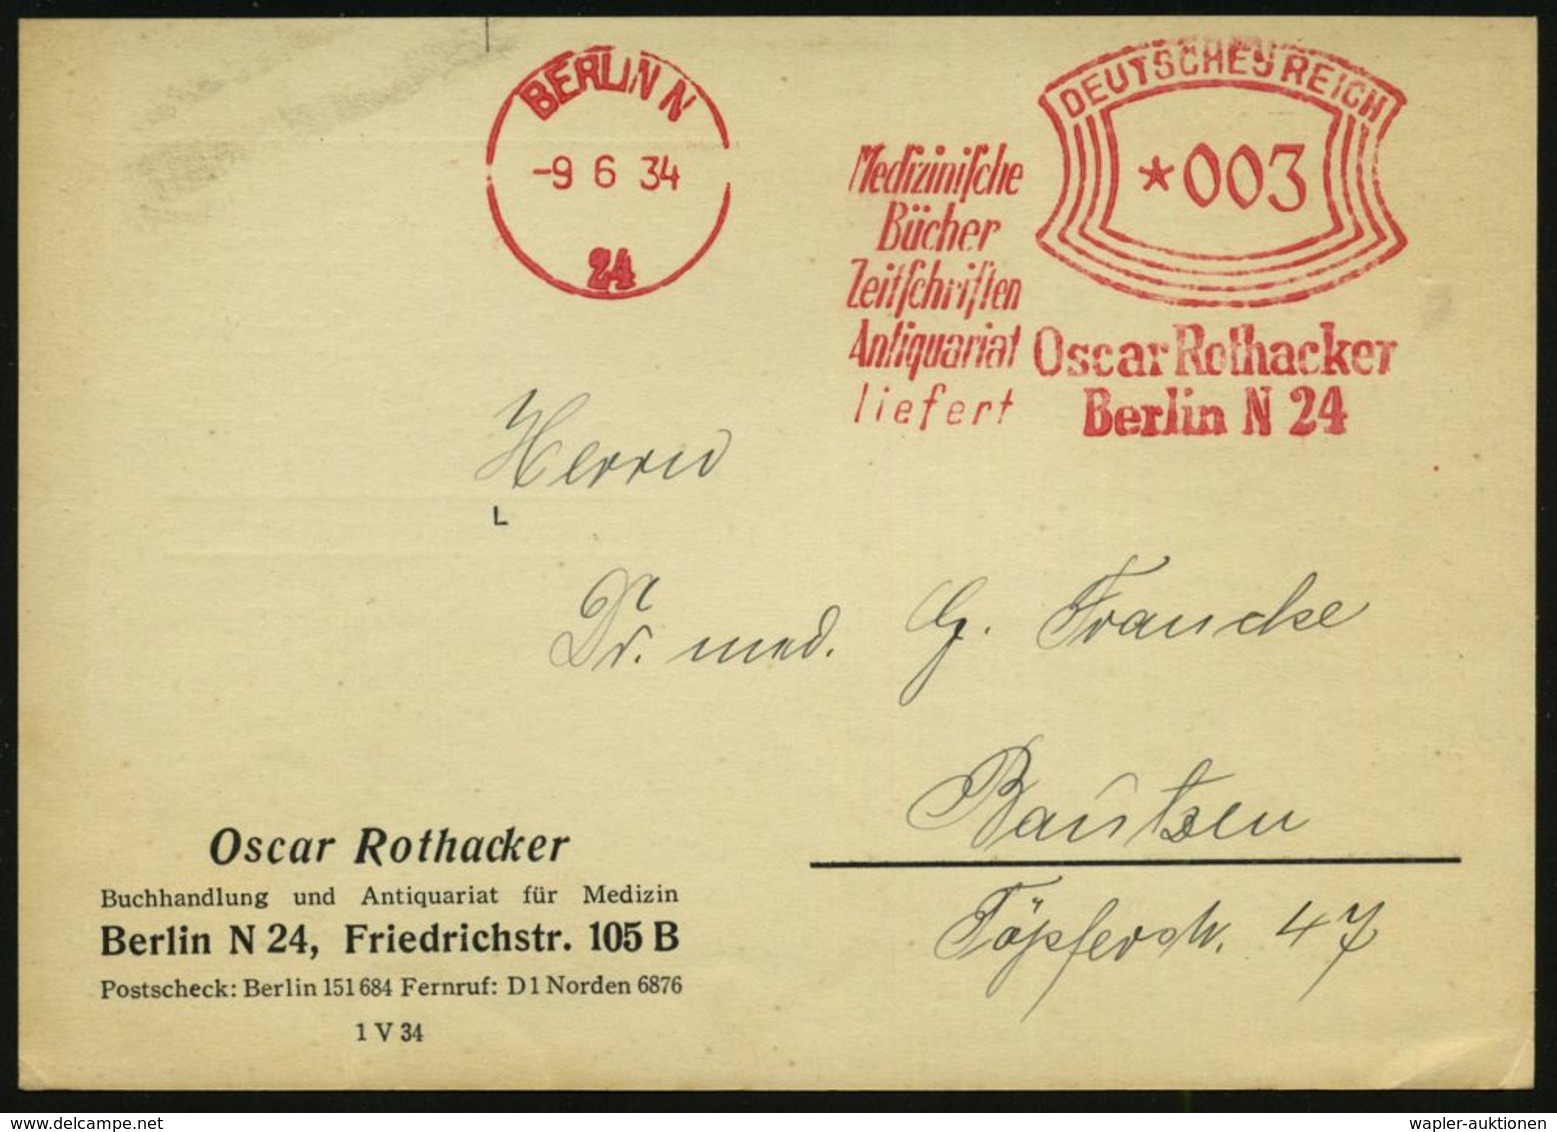 MEDIZIN / GESUNDHEITSWESEN : BERLIN N/ 24/ Medizin./ Bücher/ Zeitschriften/ Antiquariat/ Liefert/ Oscar Rothacker 1934 ( - Médecine